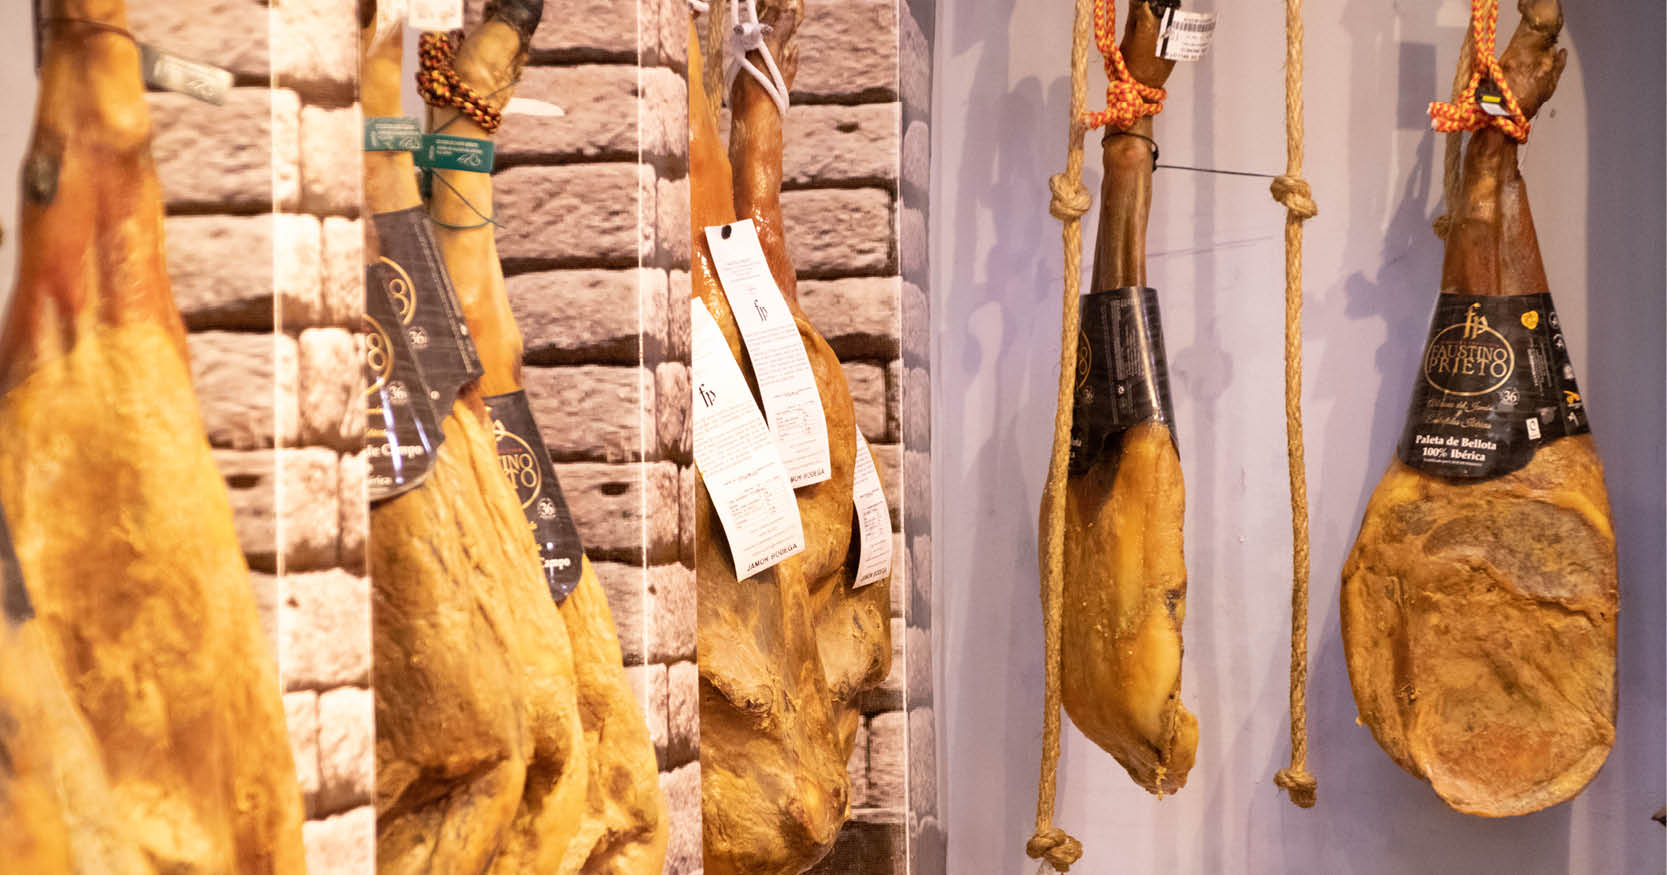 Traditional hams from Segovia 